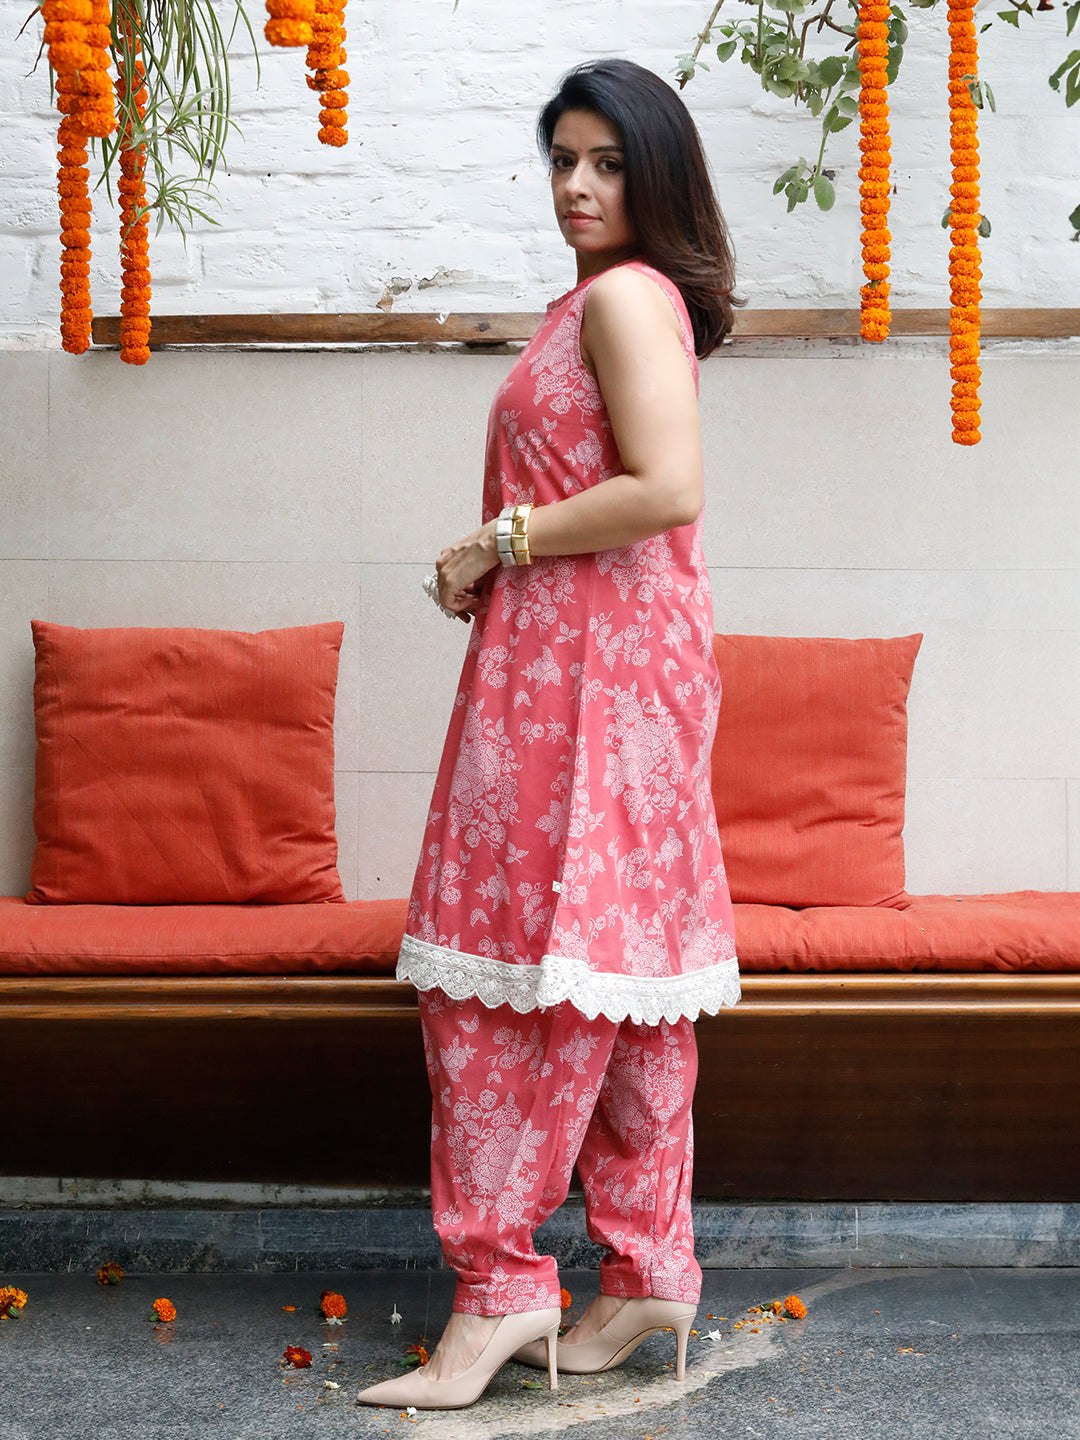 Chiffon Regular Sleeveless Ladies Salwar Suit at Rs 695/piece in Mumbai |  ID: 15377157348